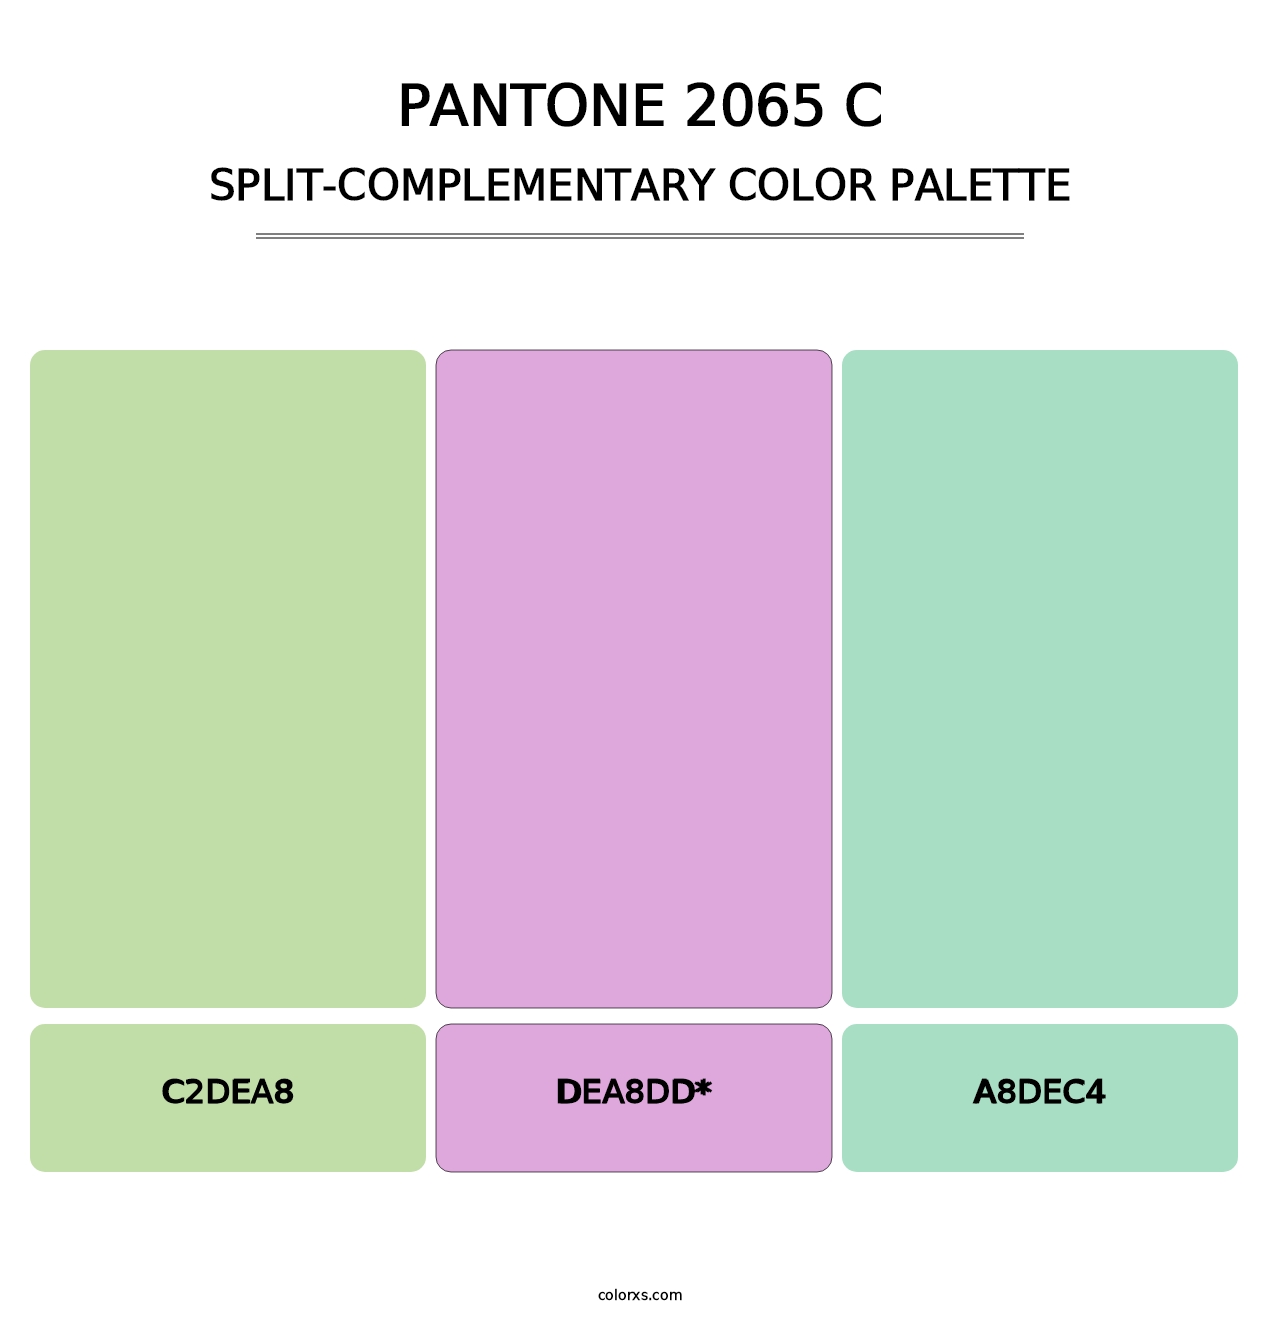 PANTONE 2065 C - Split-Complementary Color Palette